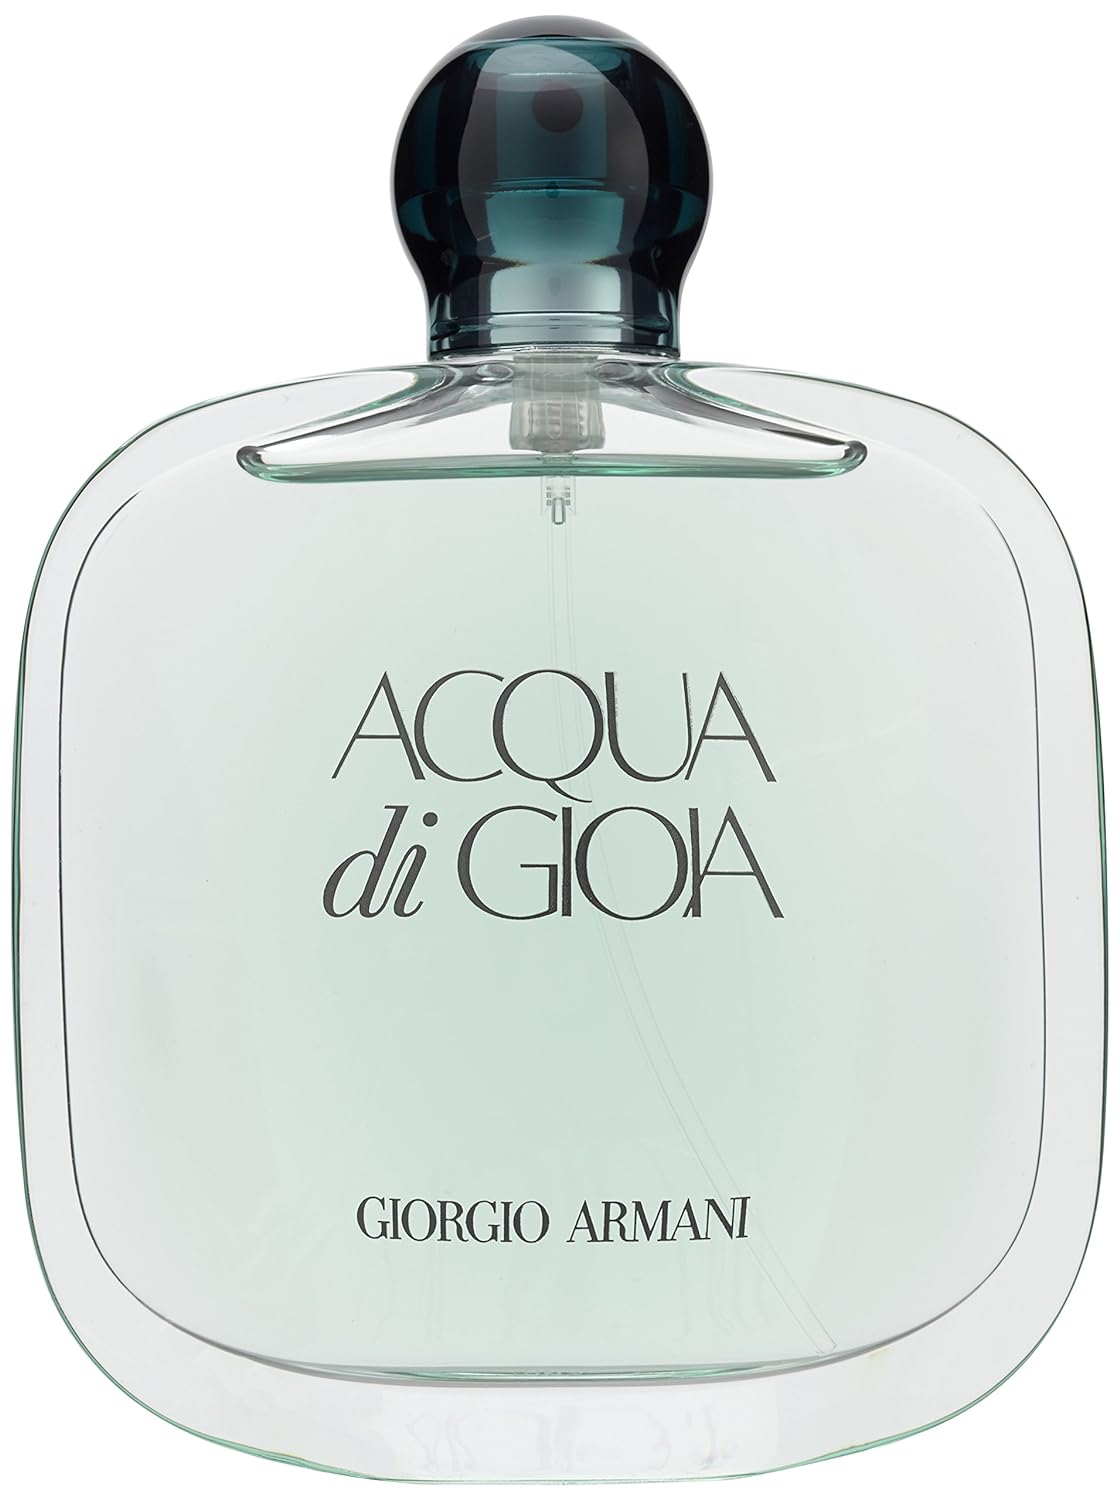 Giorgio Armani Acqua di Gioia femme /